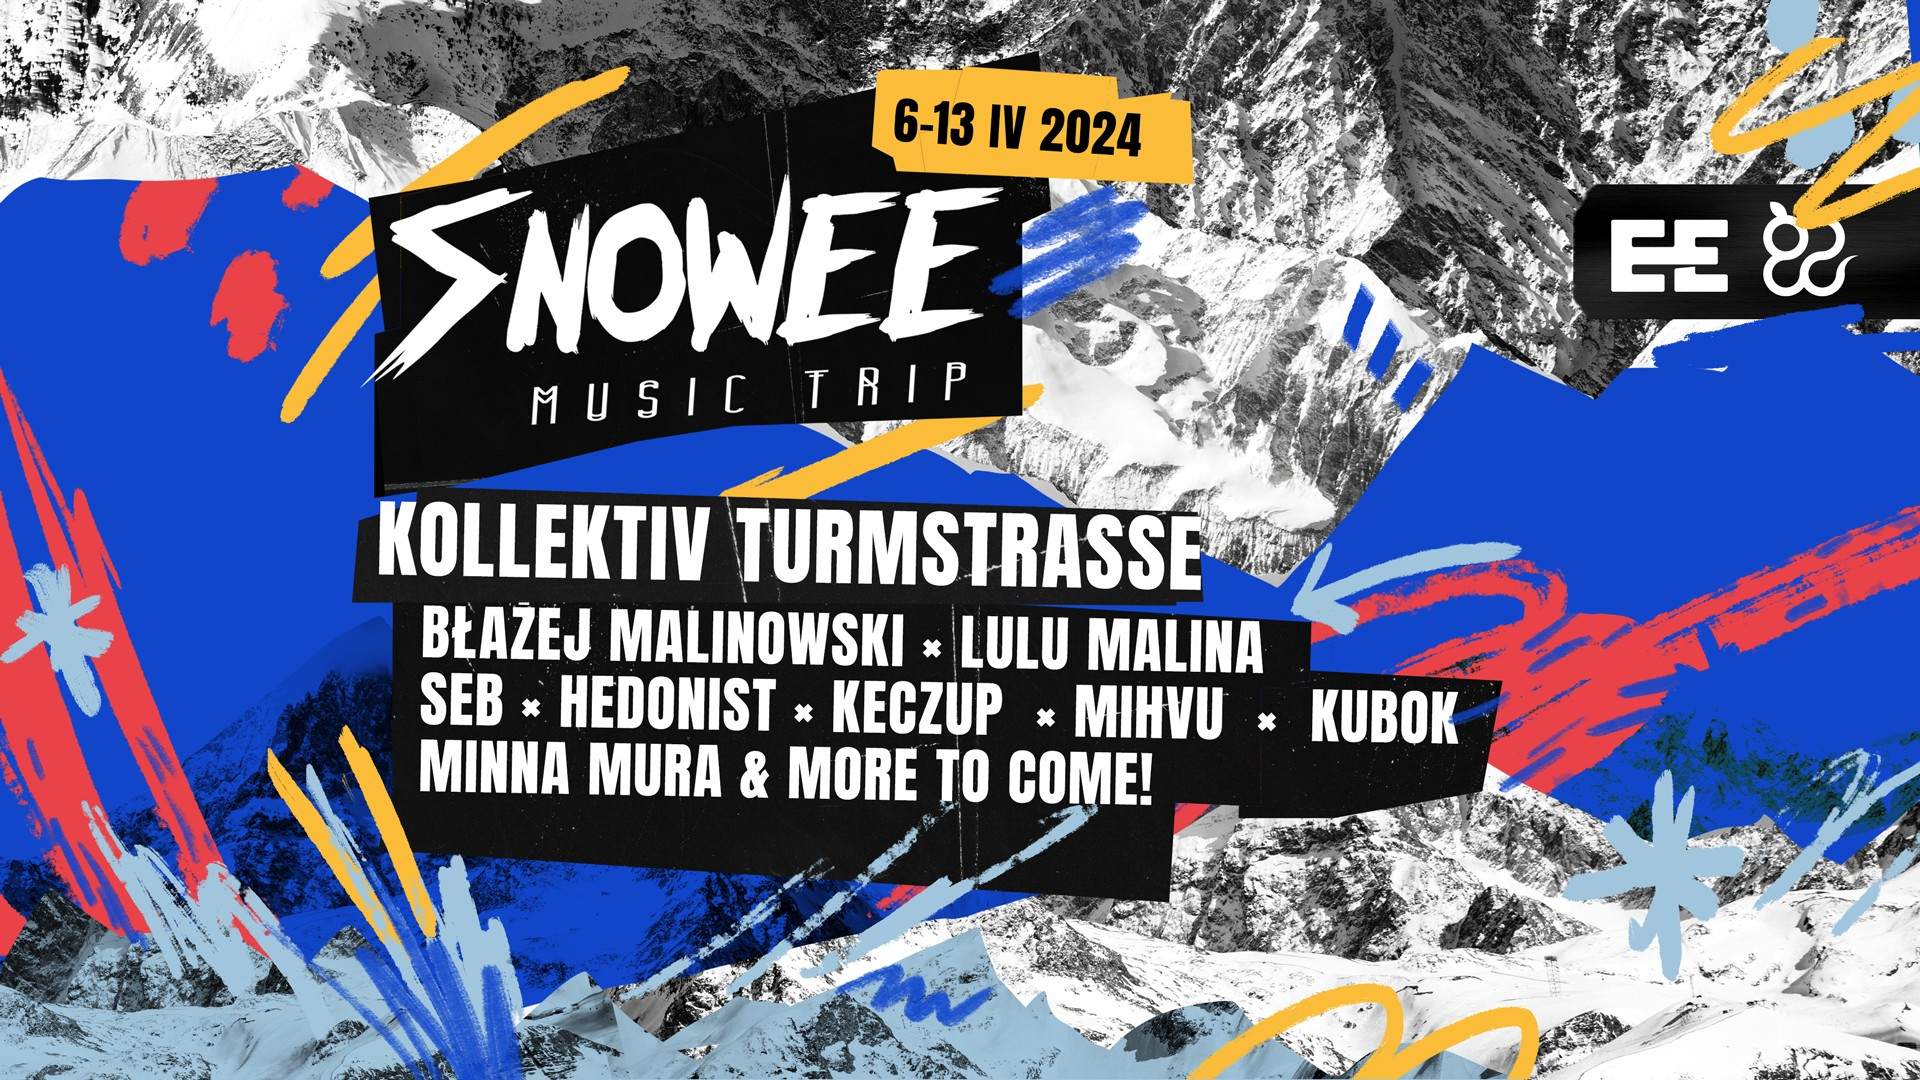 Snowee Music Trip 2024 - フライヤー表